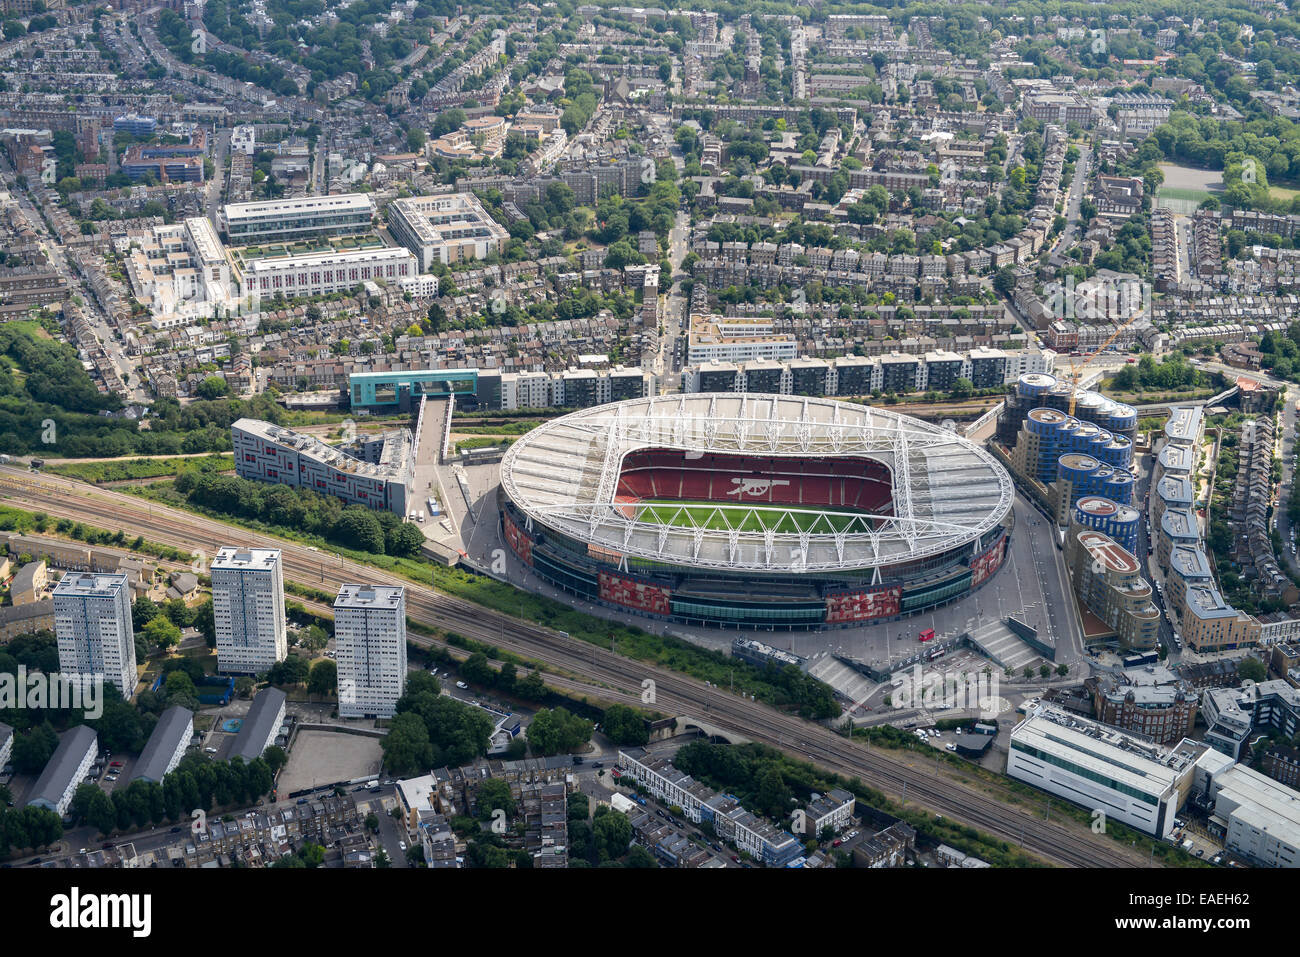 Eine Luftaufnahme des Emirates Stadium, Heimat des Arsenal FC. Ihre ehemalige Heimat ist Highbury im Hintergrund Stockfoto